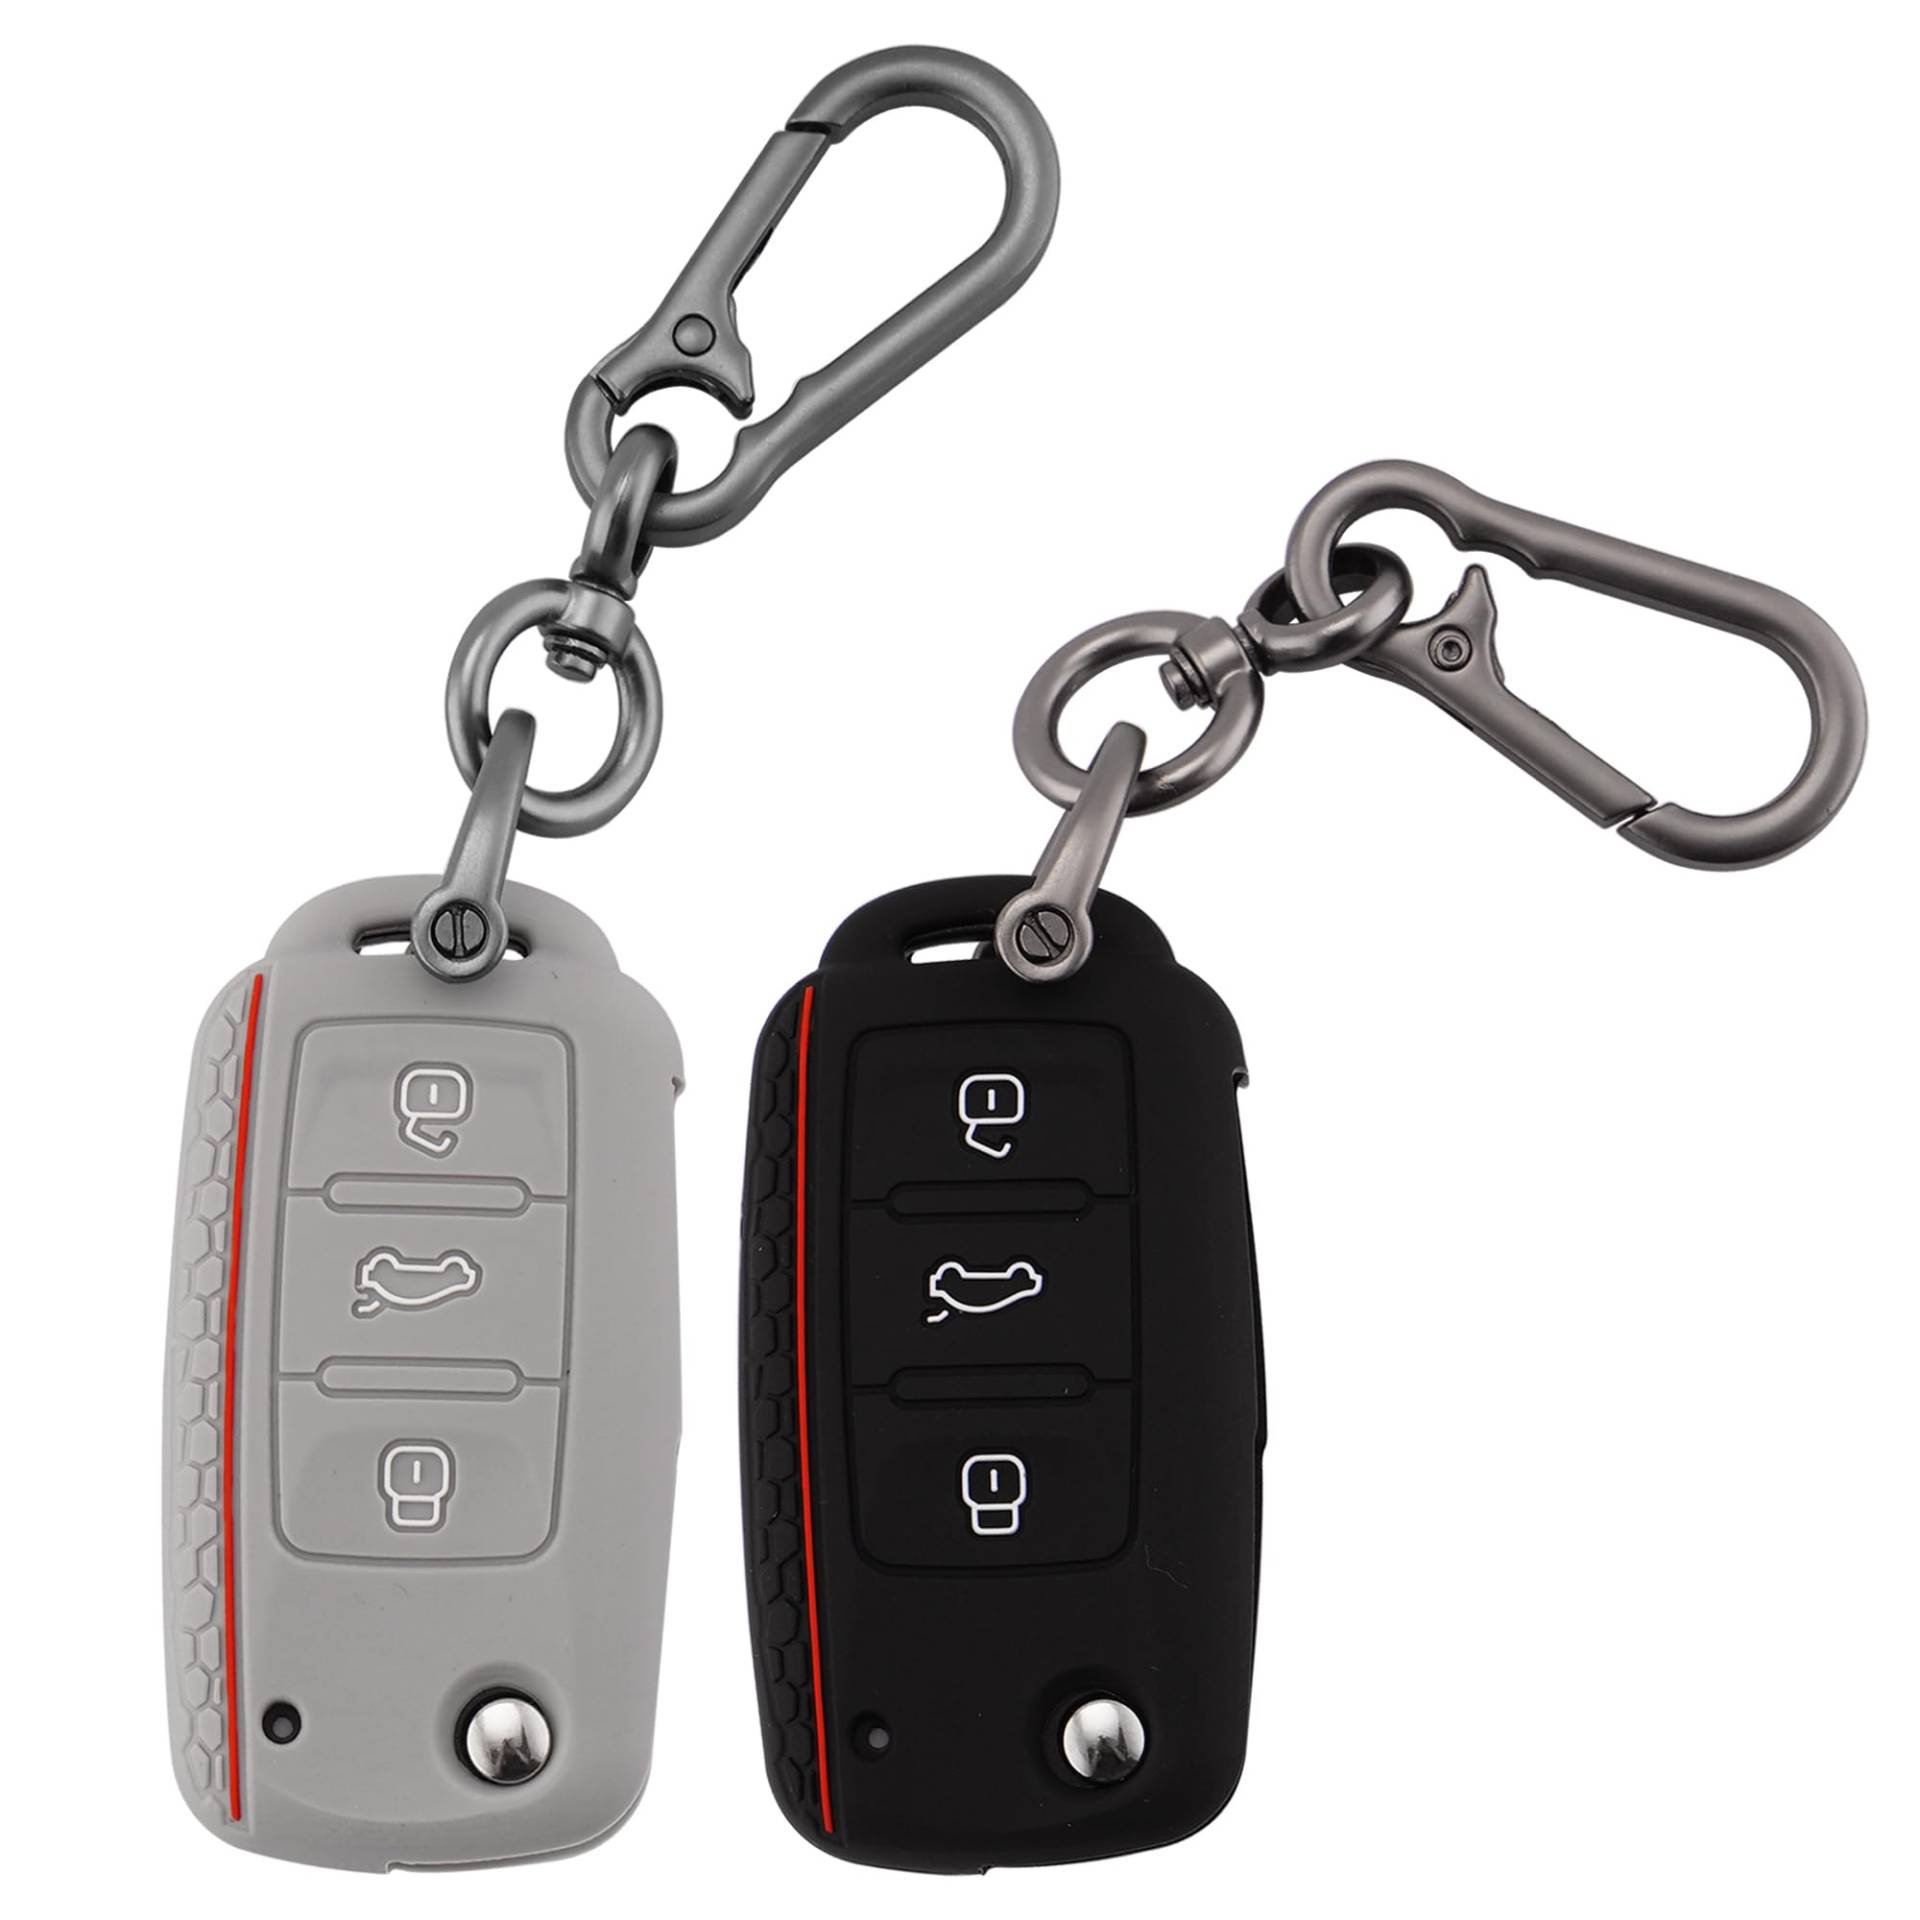 ERMWALR Auto-Schlüsselanhänger-Abdeckung mit Schlüsselanhänger für VW, 3 Tasten, Silikon-Schlüsselgehäuse, passend für VW Volkswagen Tiguan Passat Golf Polo Beetle Jetta Touran, 2 Stück (Vlw-3S-BG) von ERMWALR